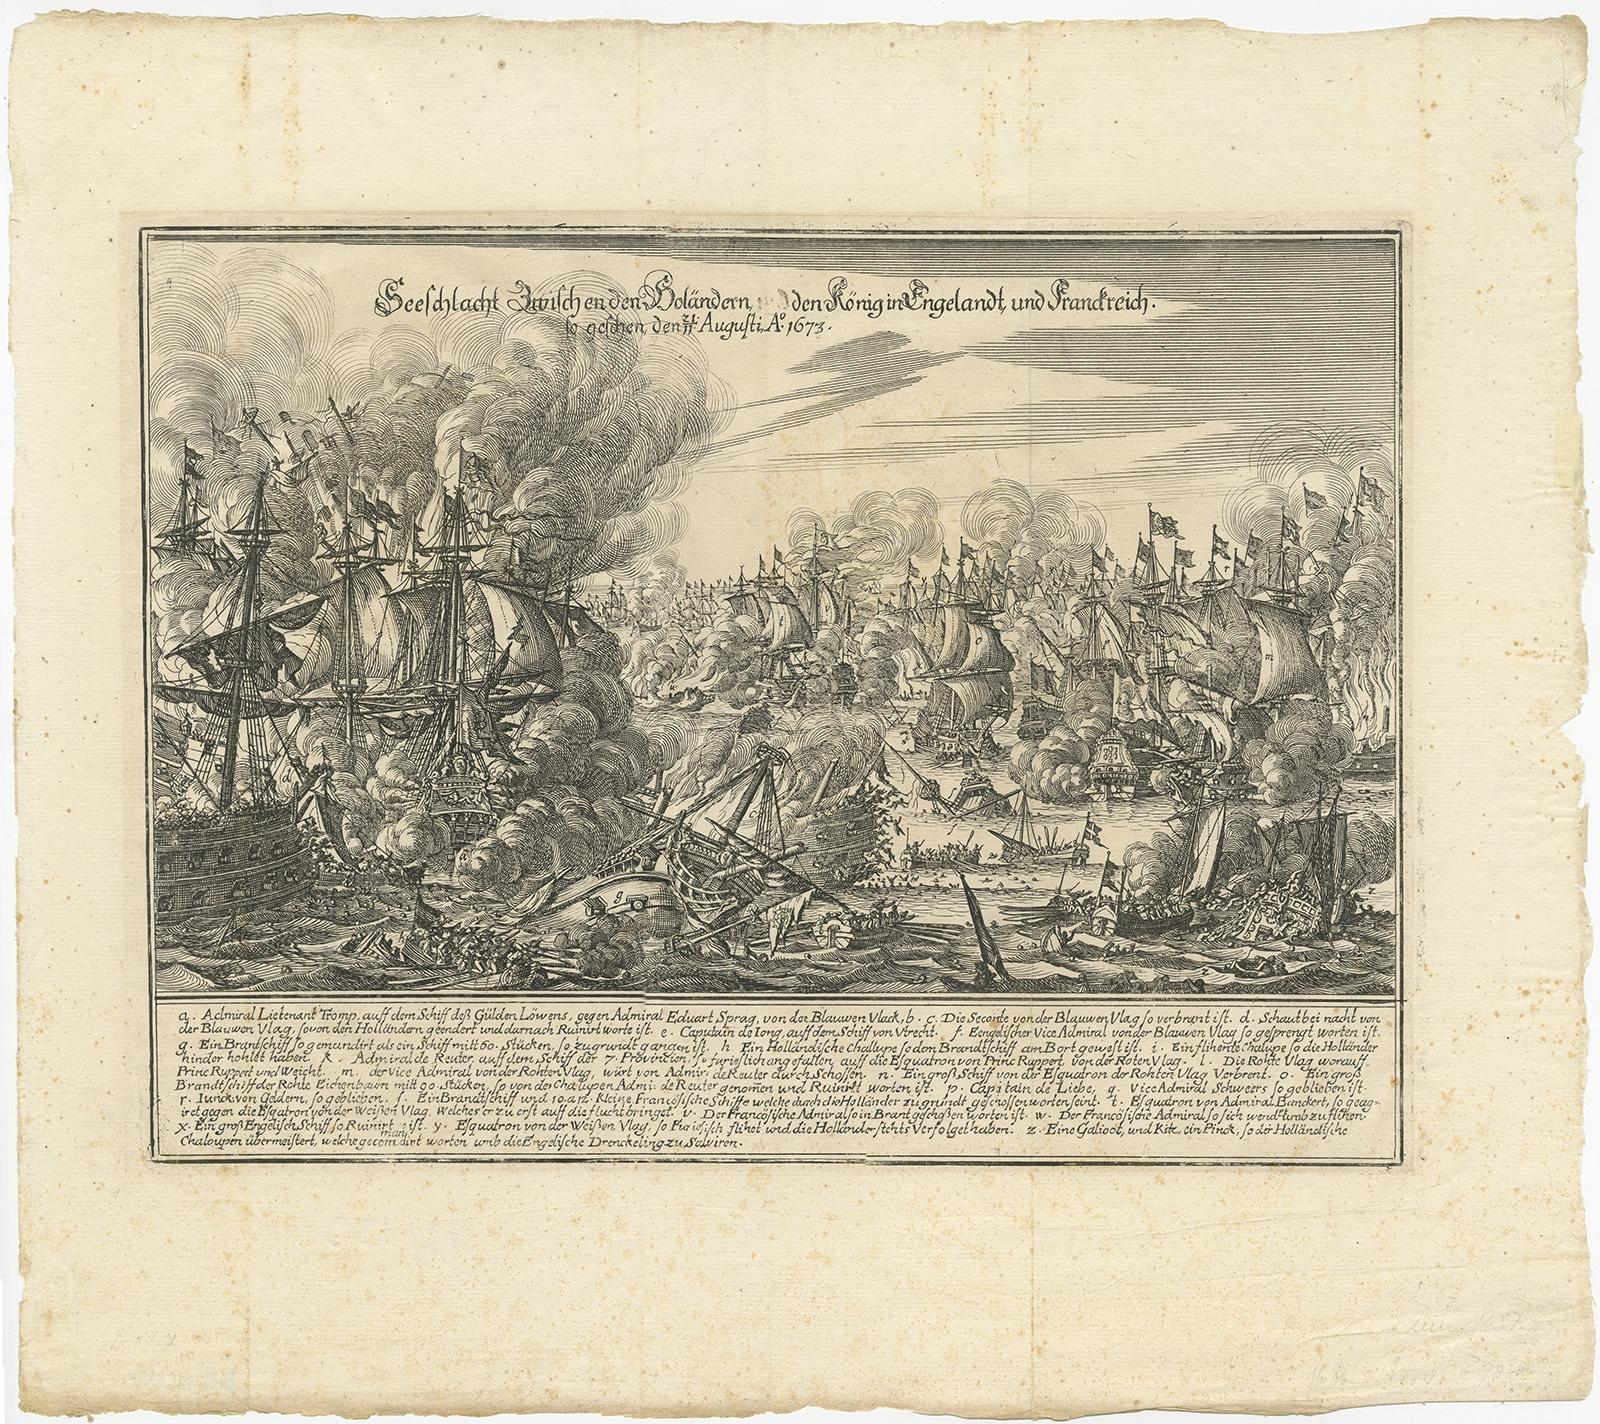 Antique print titled 'Seeschlacht Zwischen den Holändern und den König in Engelandt und Franckreich'. 

Engraving of the Battle of Texel. The naval Battle of Texel or Battle of Kijkduin took place off the southern coast of island of Texel on 21